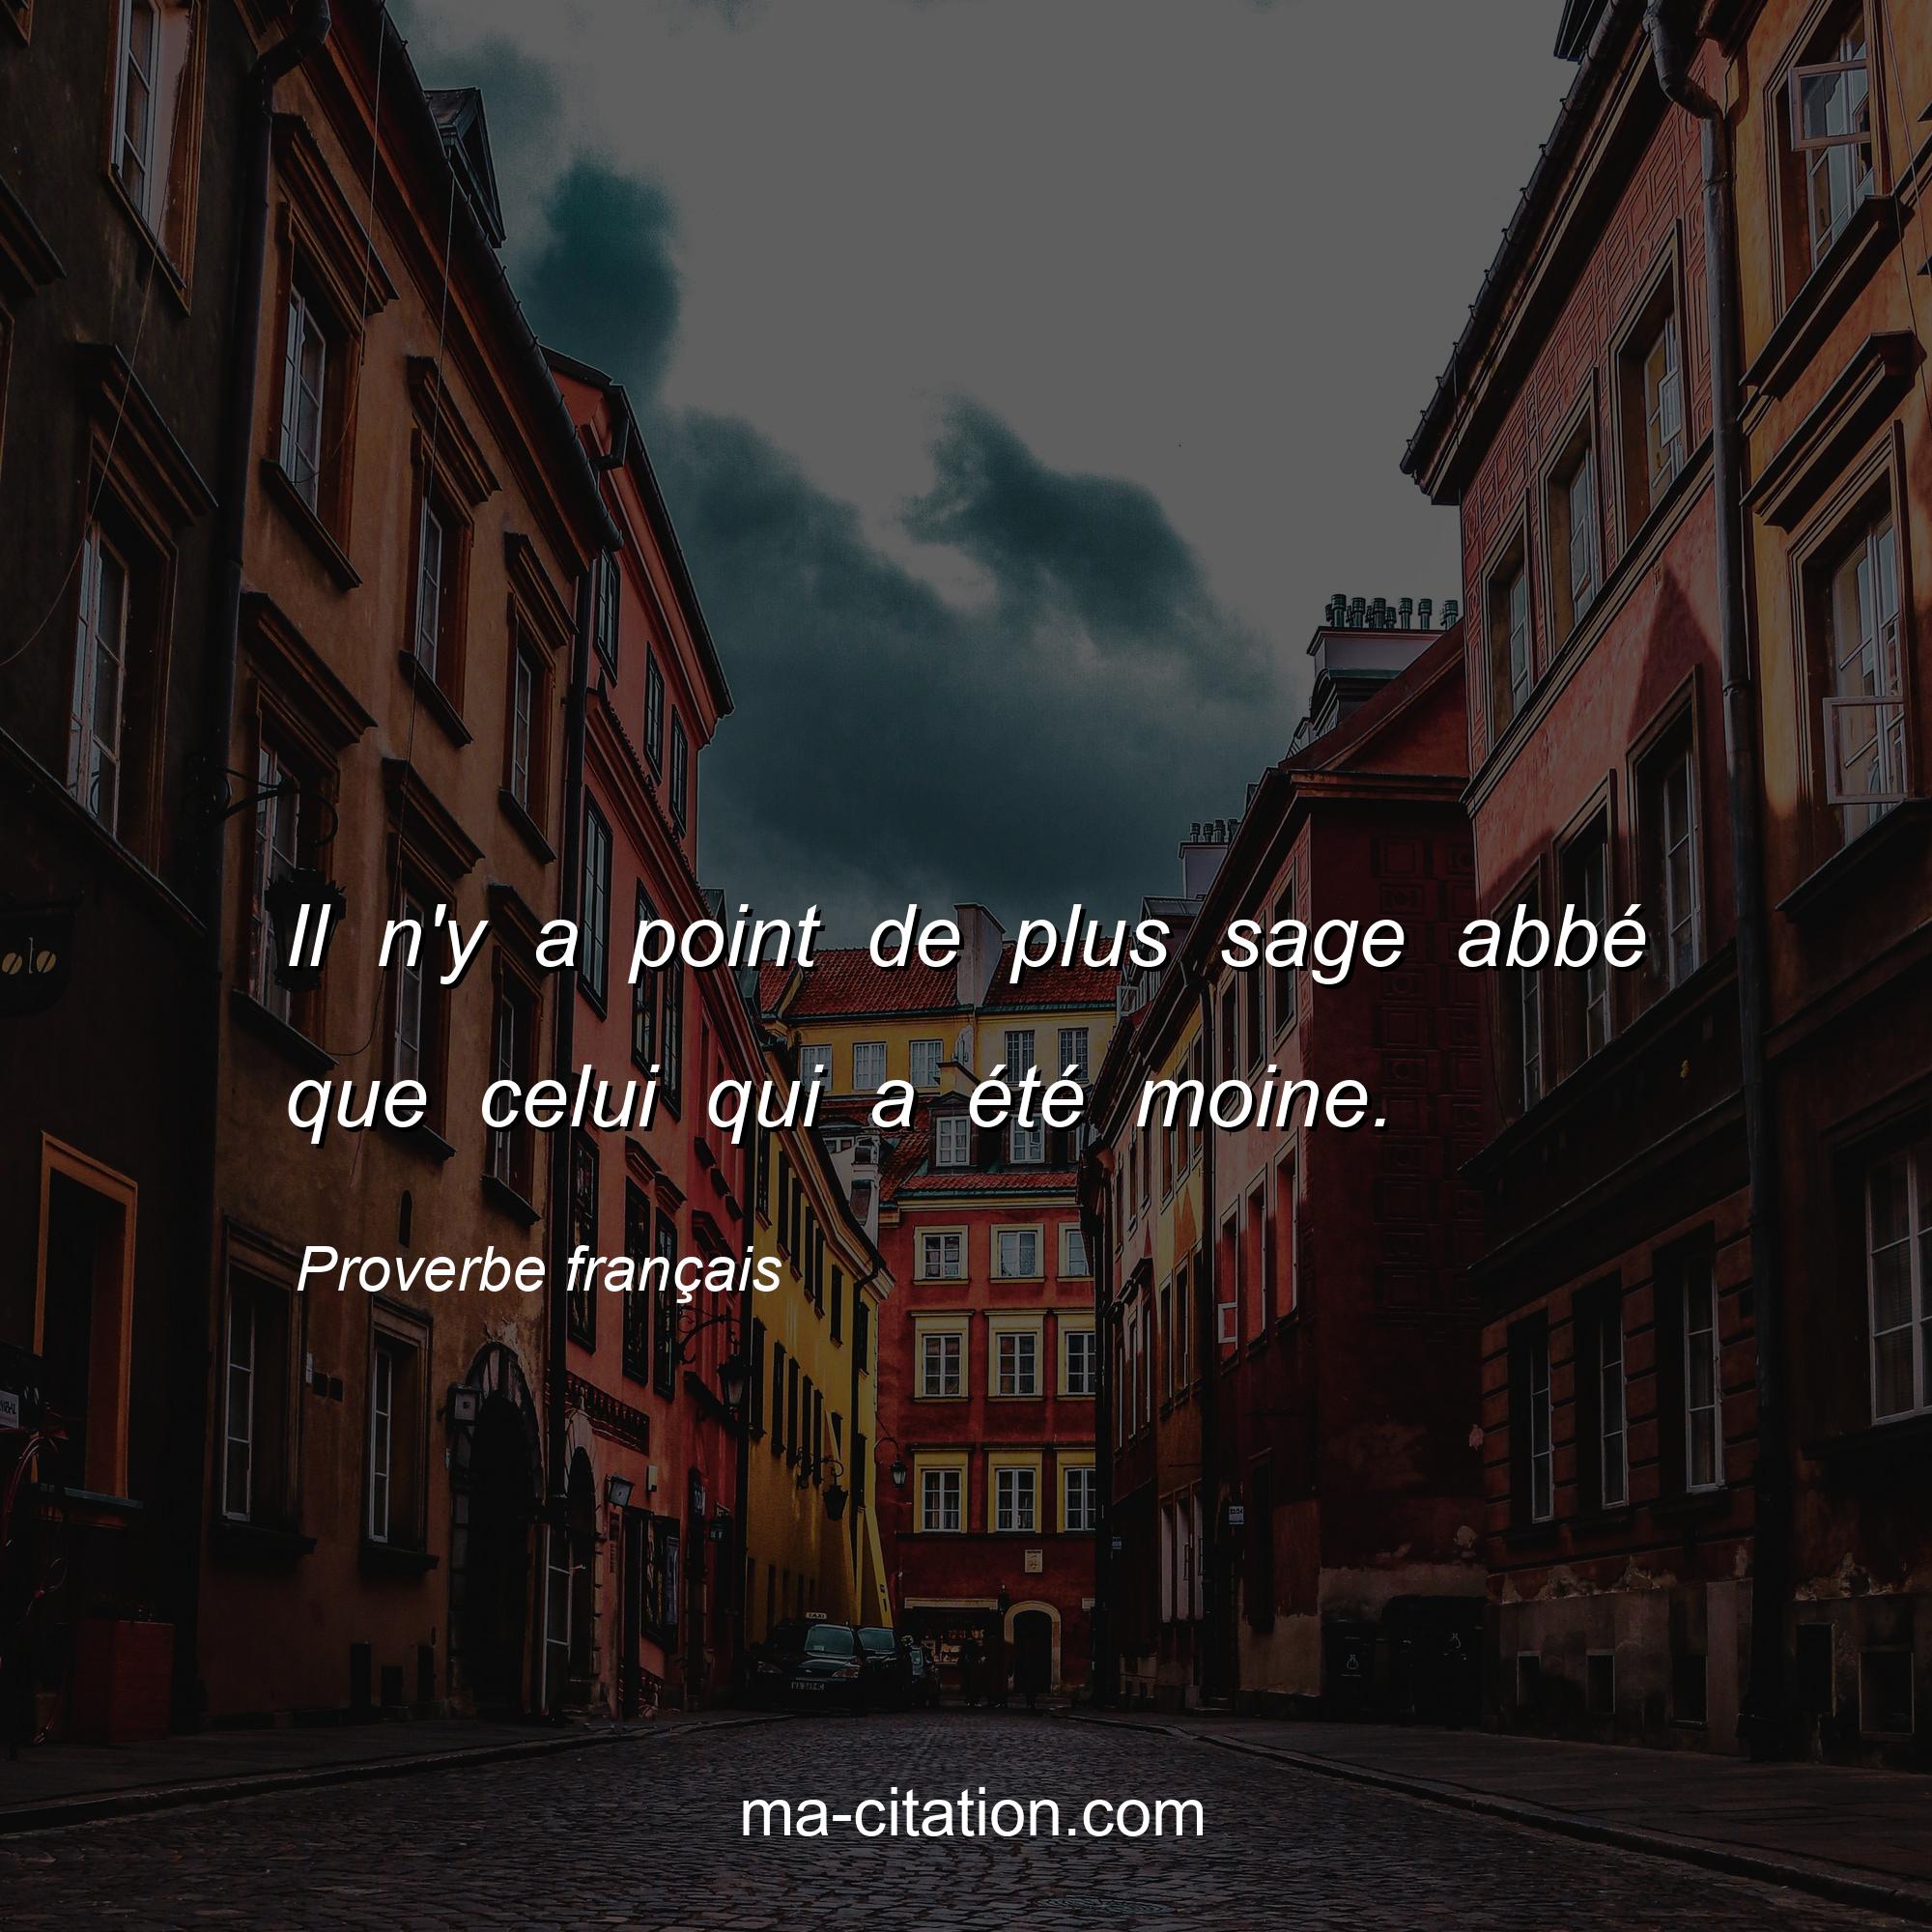 Proverbe français : Il n'y a point de plus sage abbé que celui qui a été moine.